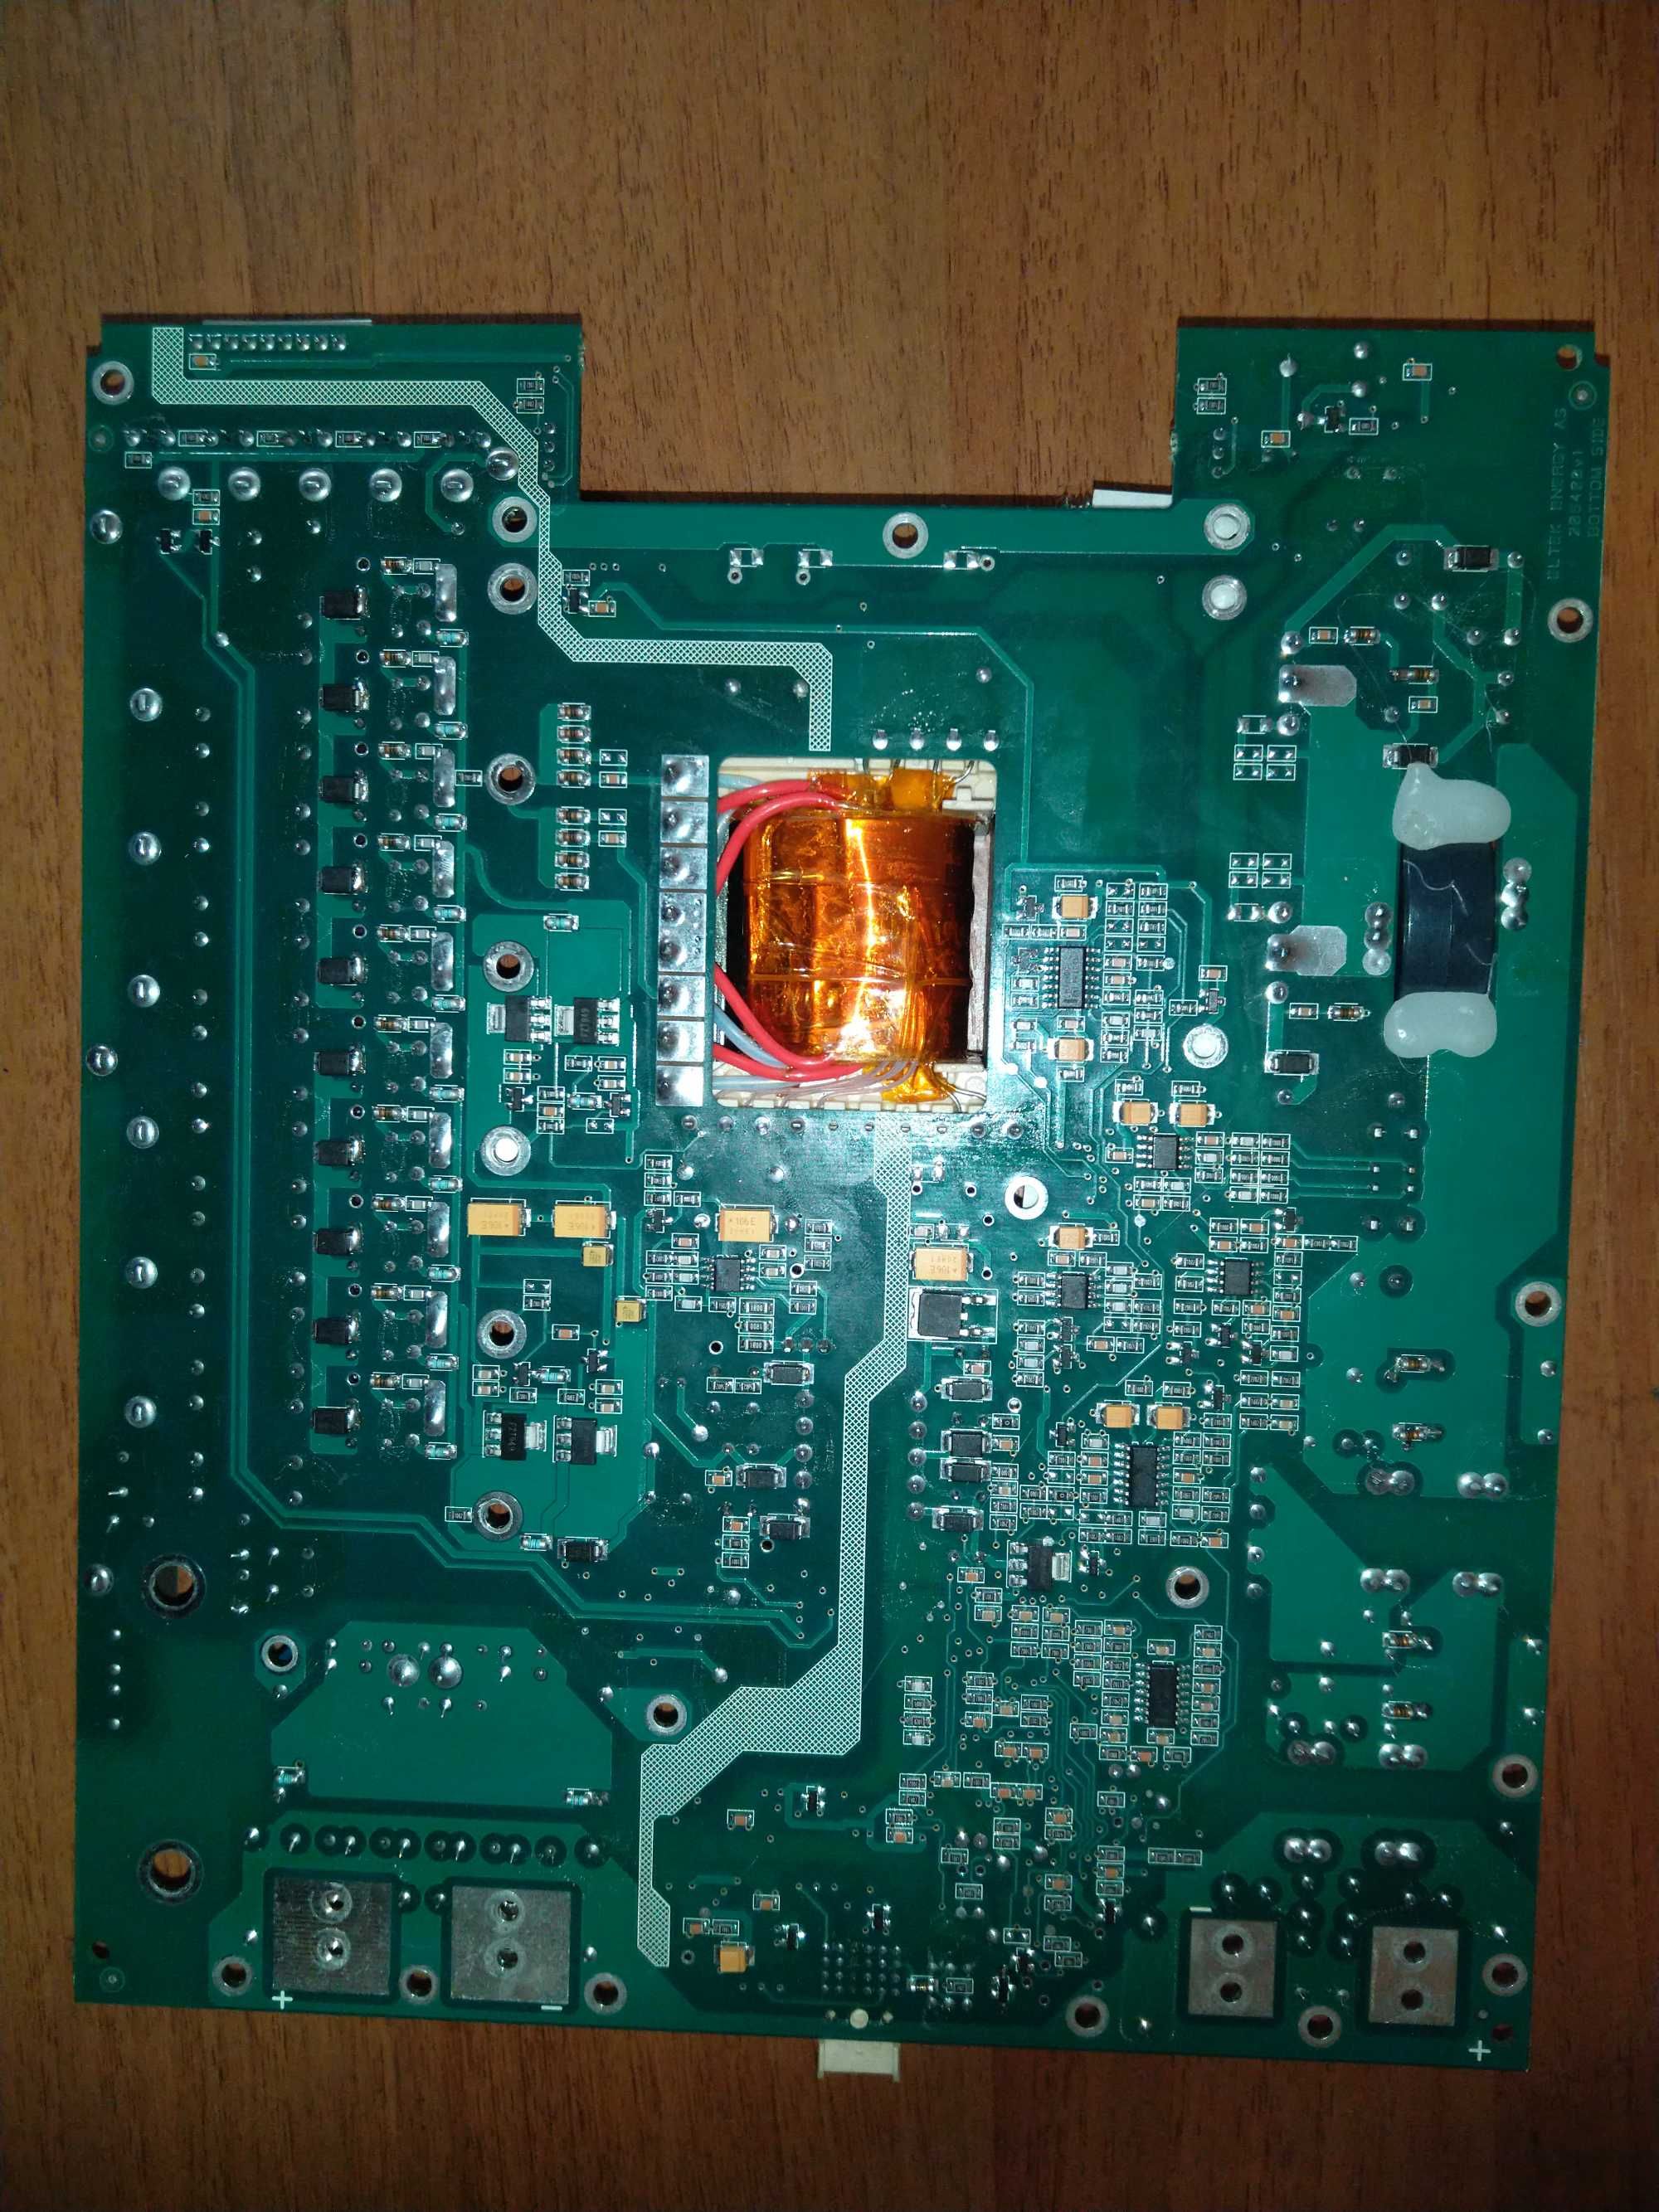 10 негорілих  плат з контроллерами транзисторів fdp3632 ixtp130n10